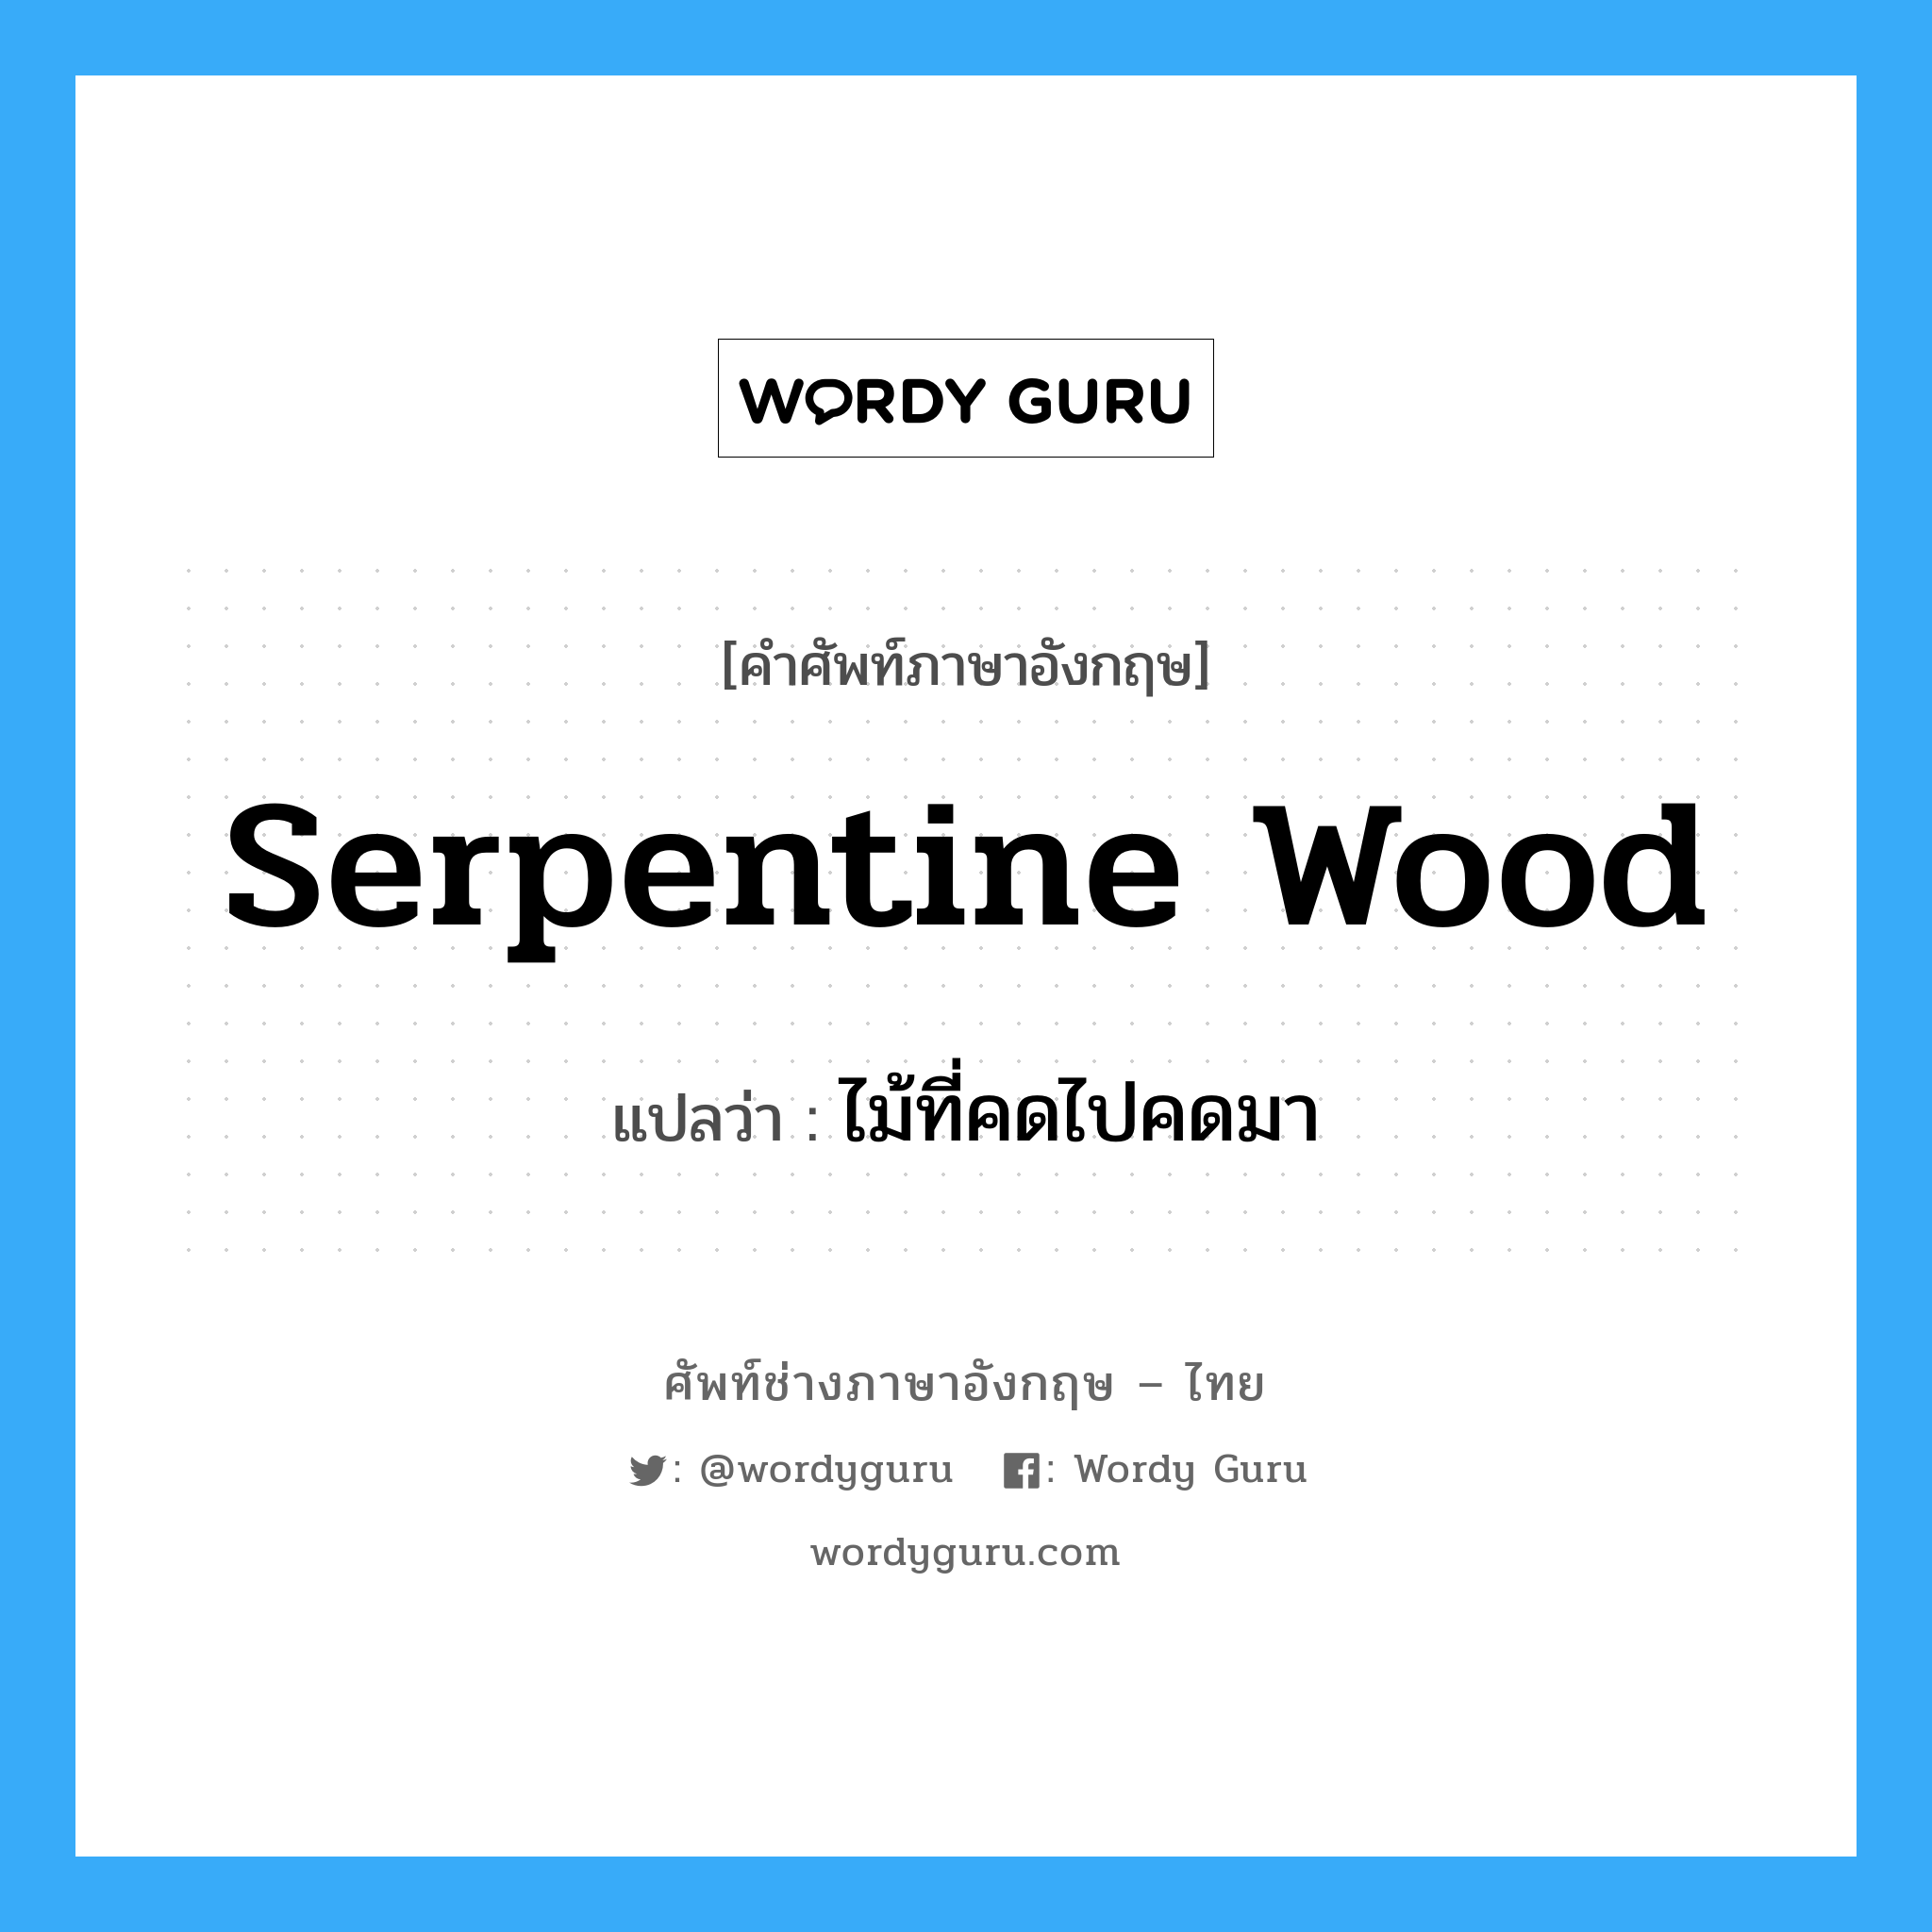 serpentine wood แปลว่า?, คำศัพท์ช่างภาษาอังกฤษ - ไทย serpentine wood คำศัพท์ภาษาอังกฤษ serpentine wood แปลว่า ไม้ที่คดไปคดมา